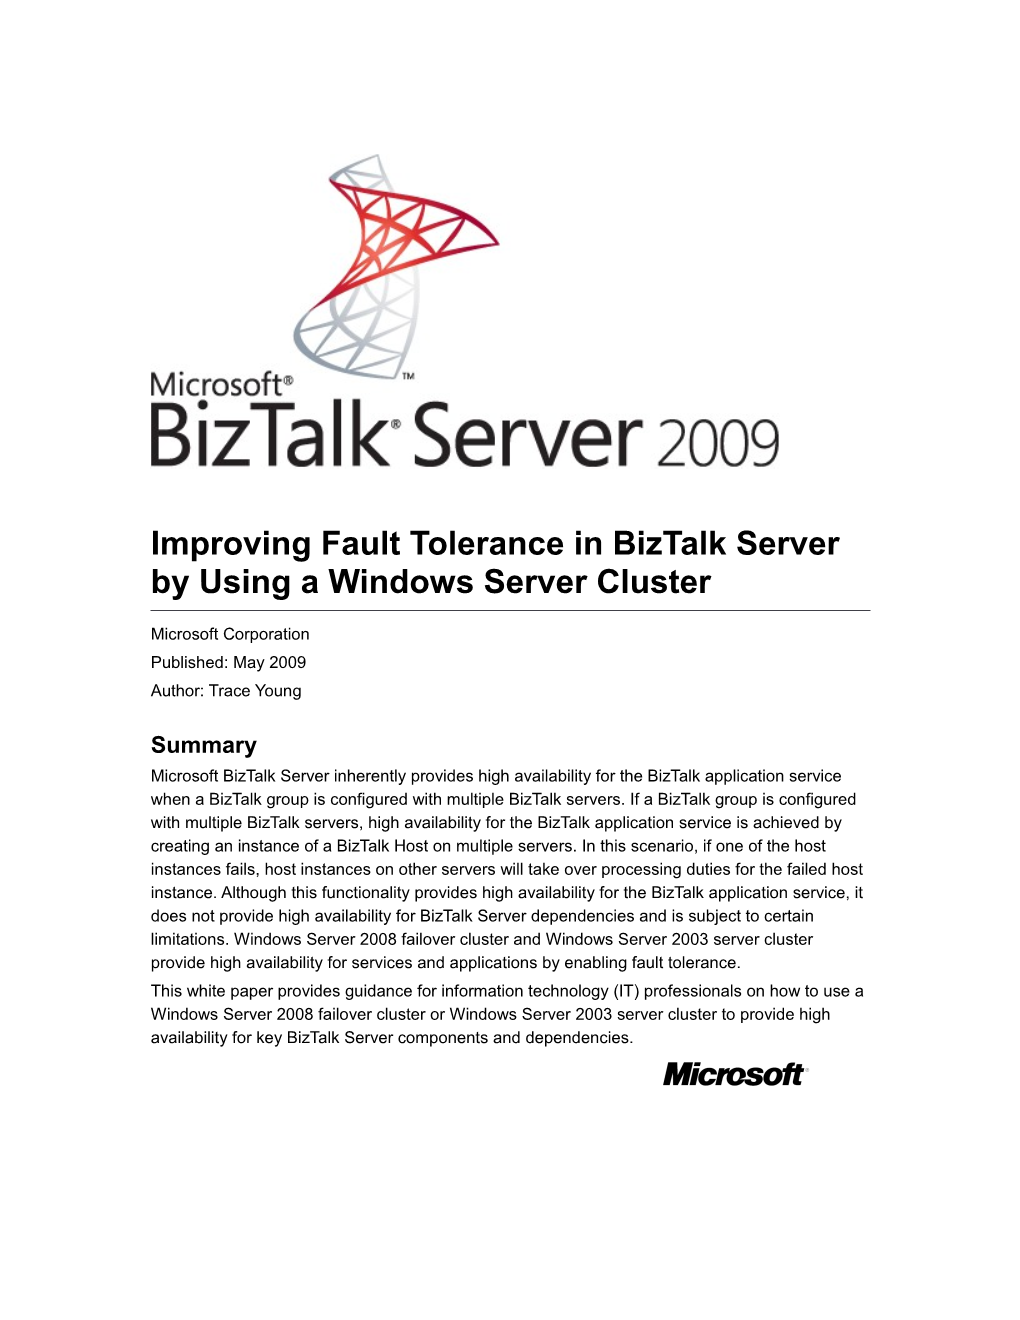 Improving Fault Tolerance in Biztalk Server by Using a Windows Server Cluster